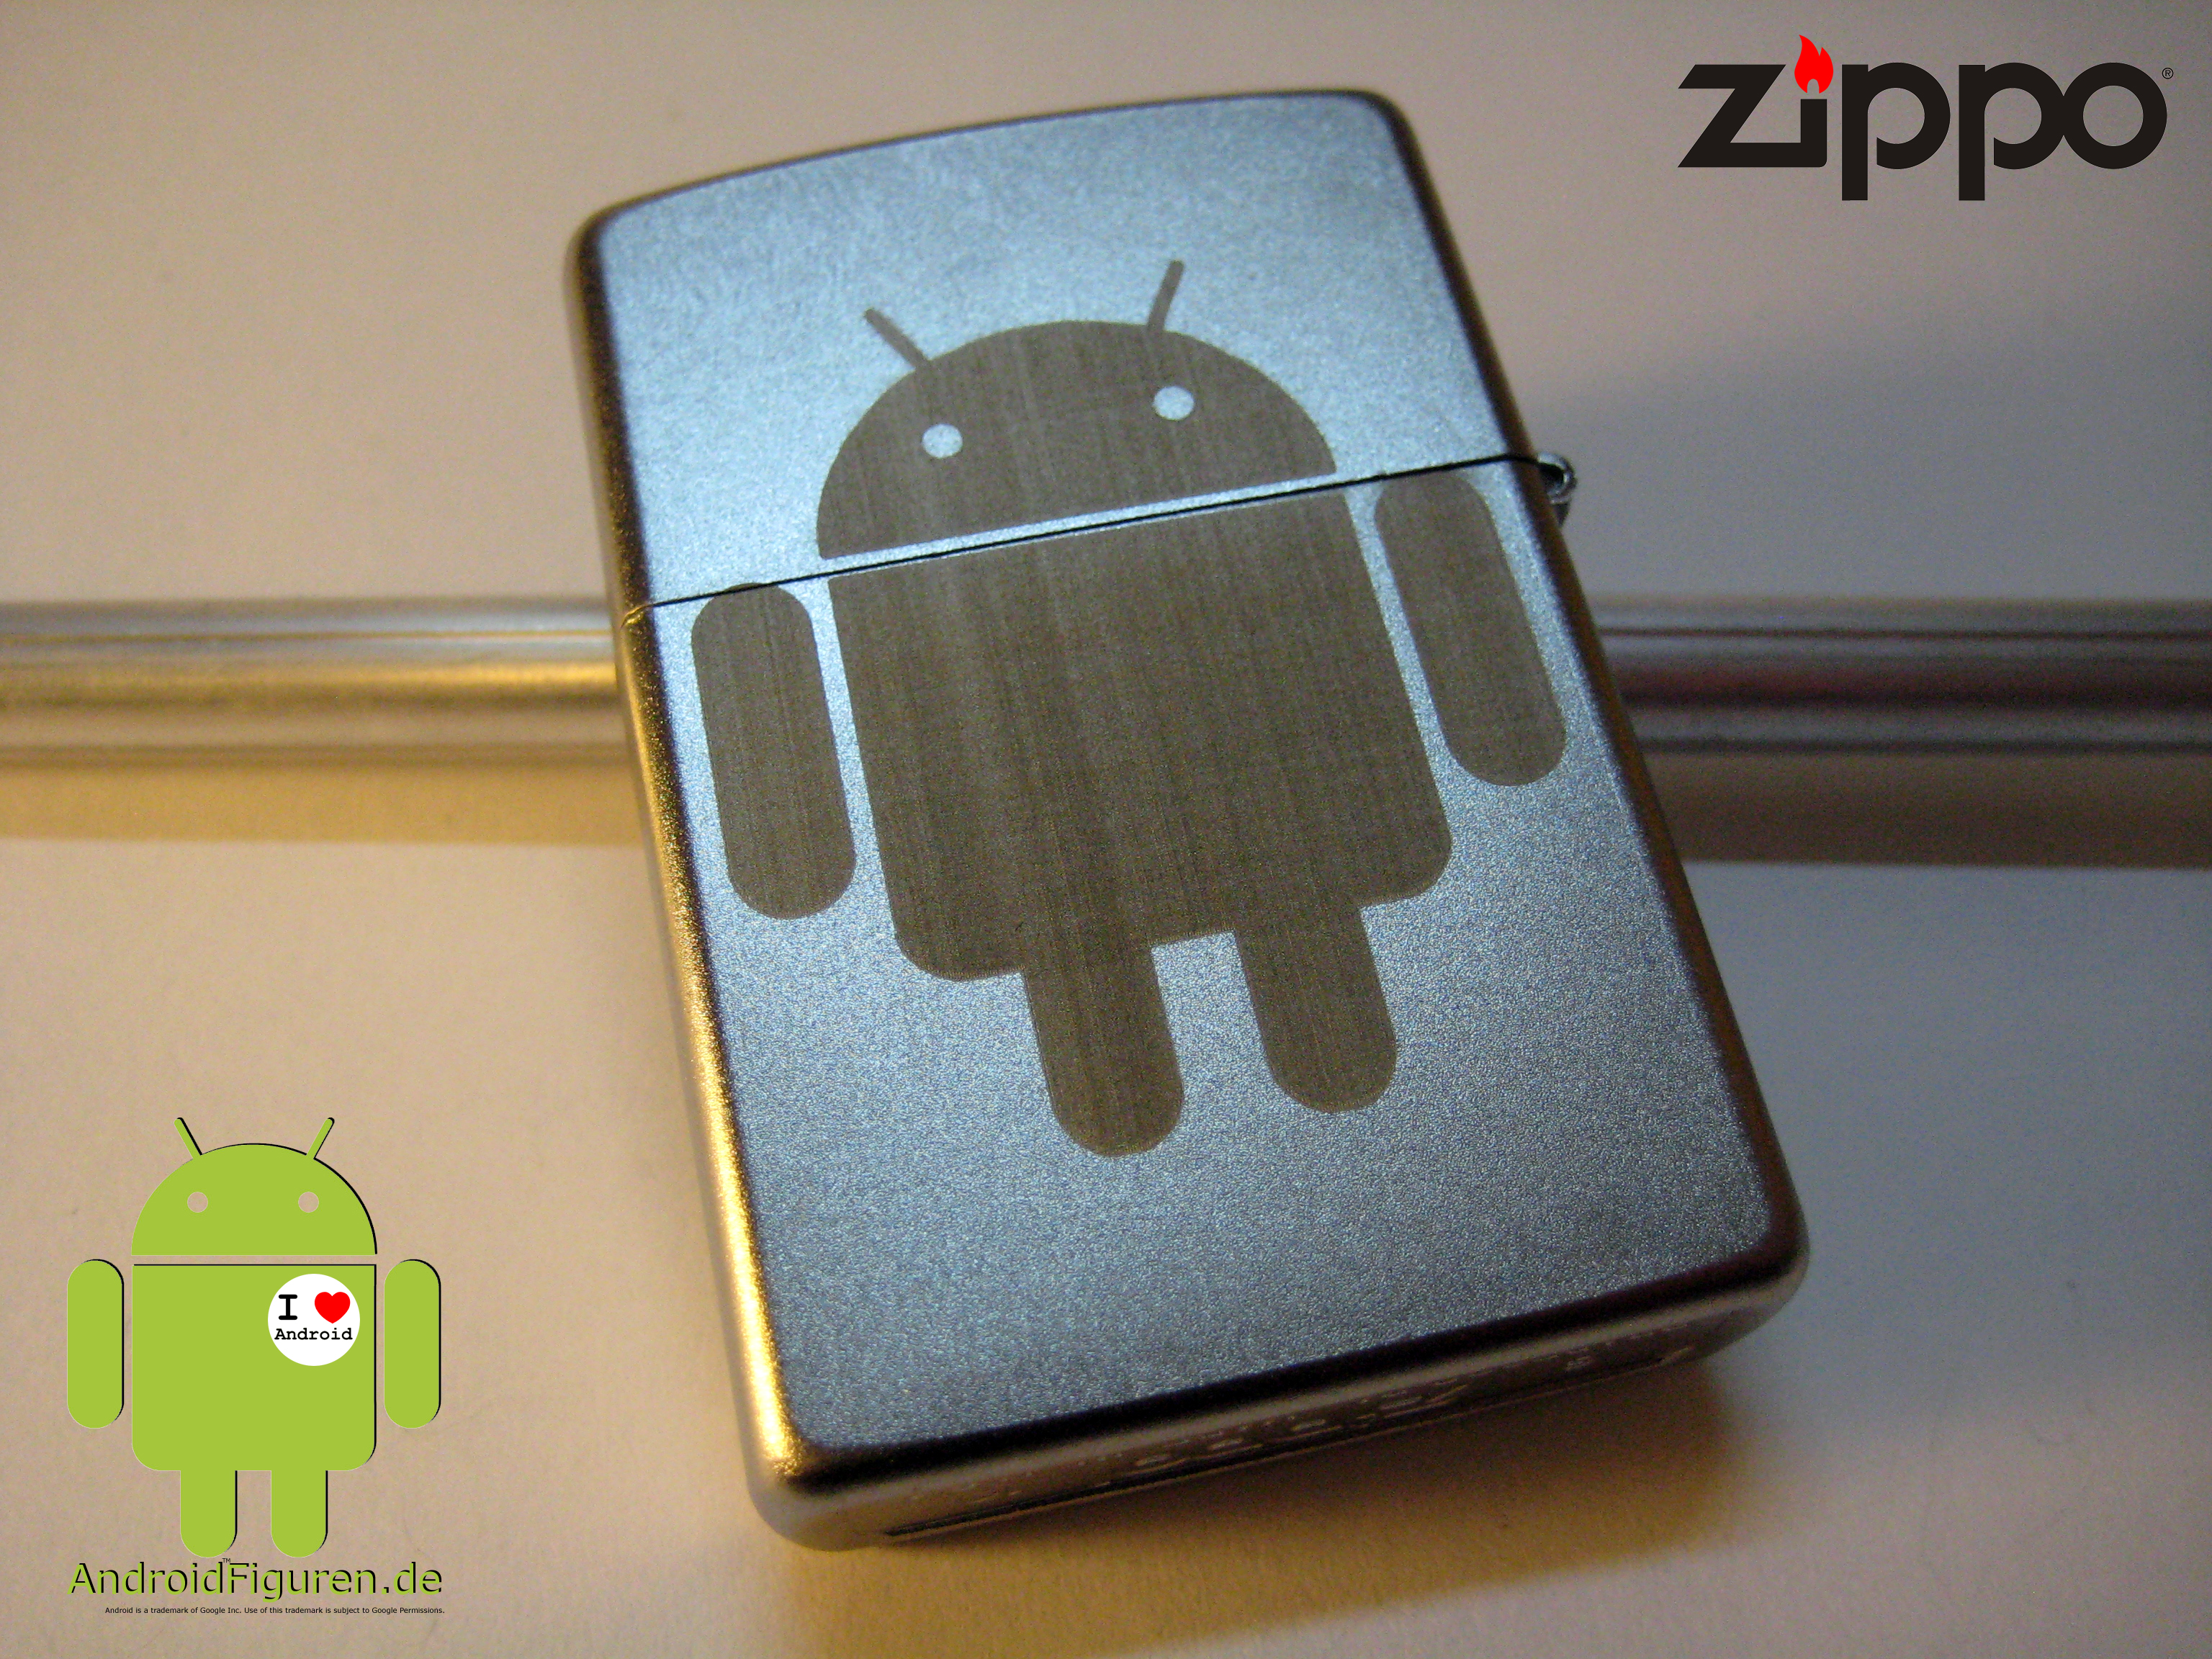 AndroidFiguren.de Zippo Lighter